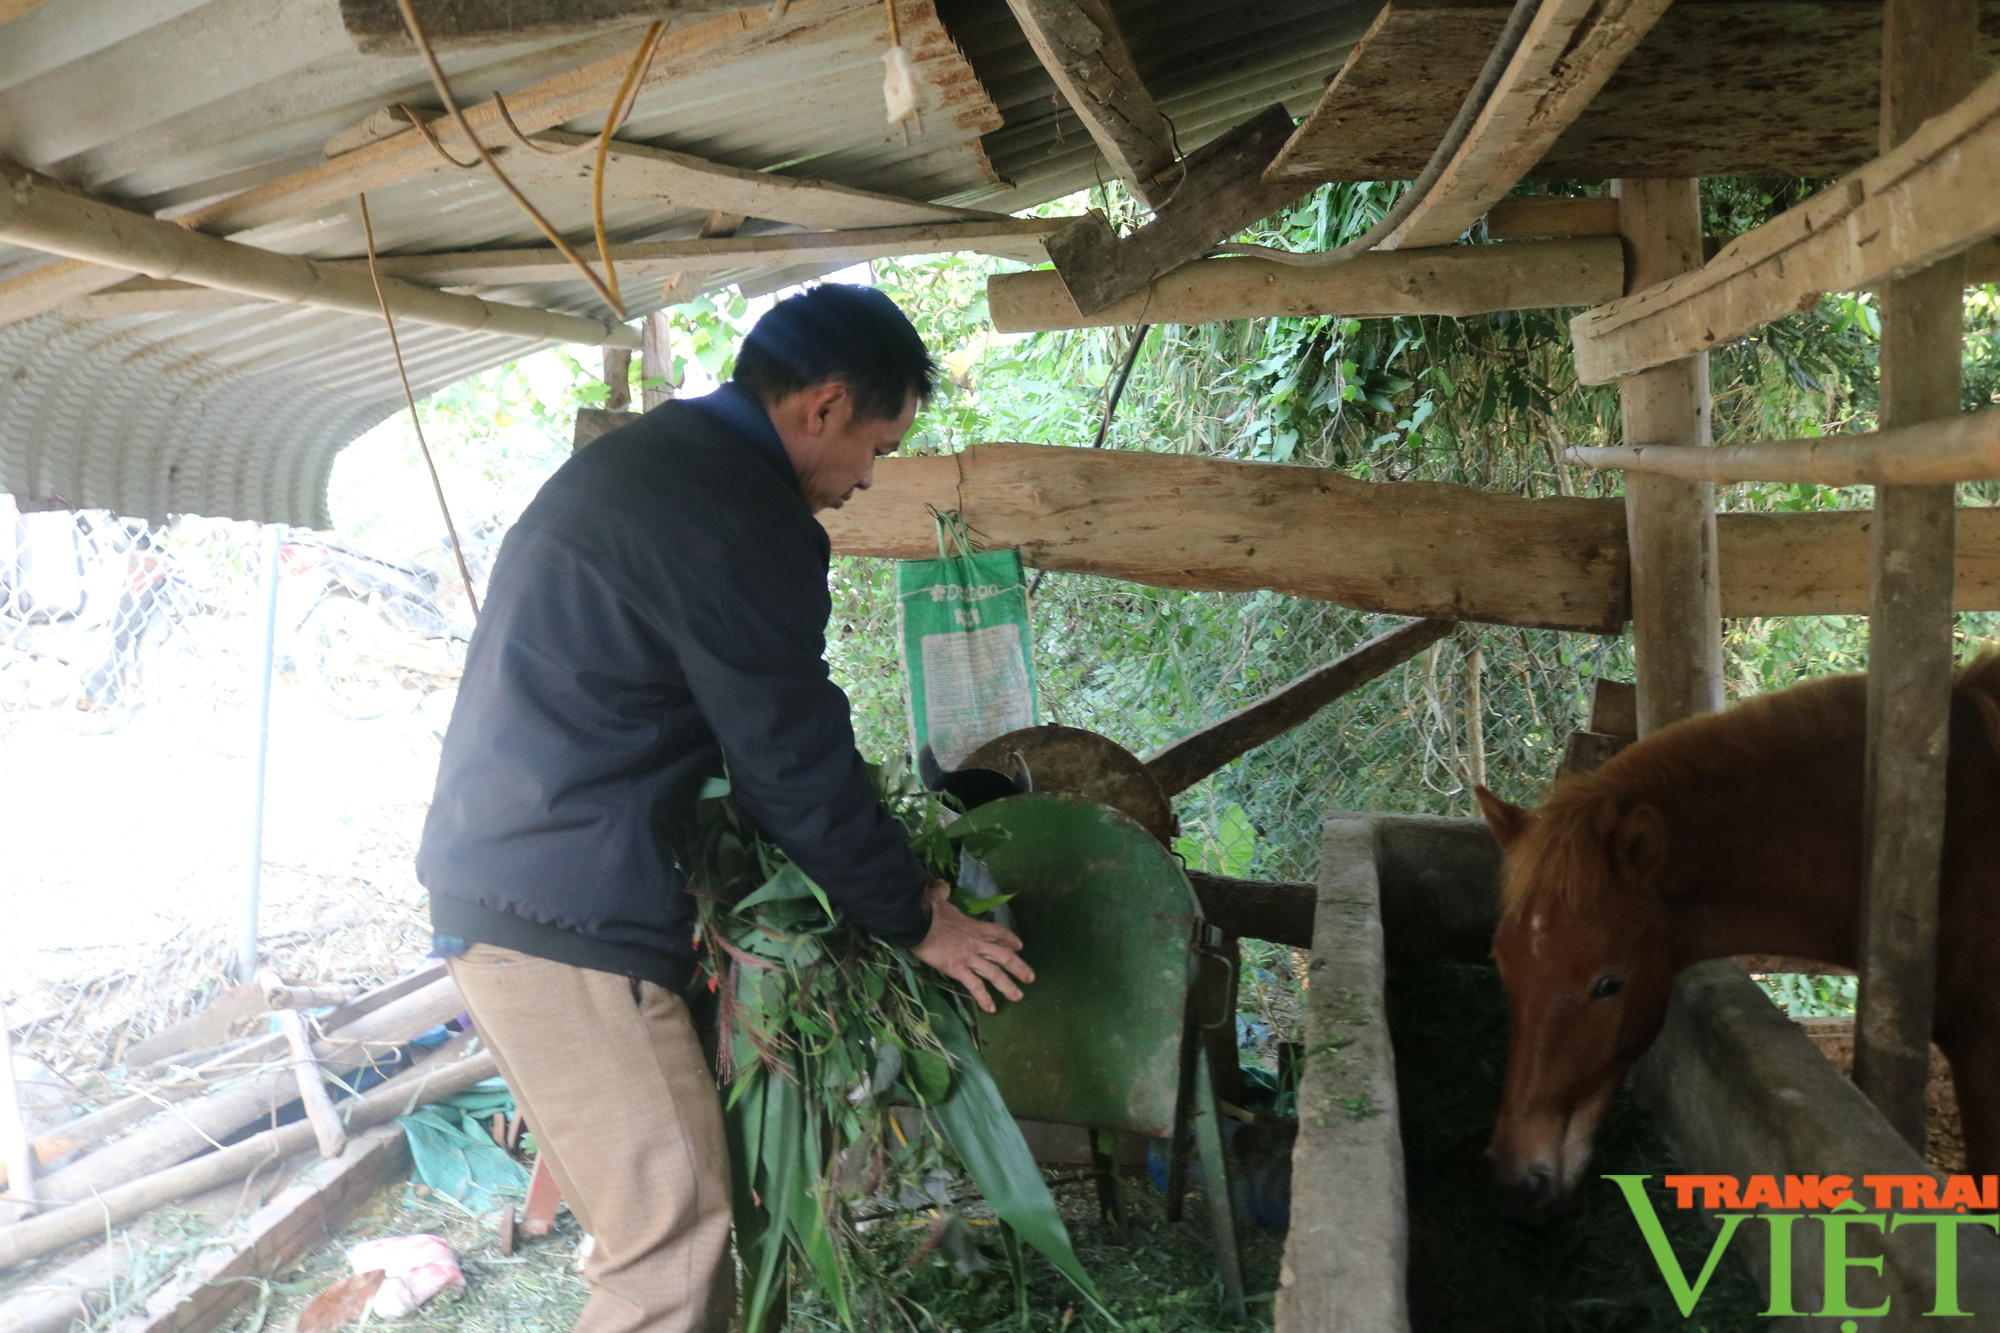  Một nông dân Lào Cai giàu lên nhờ nuôi ngựa theo hướng hàng hóa  - Ảnh 5.